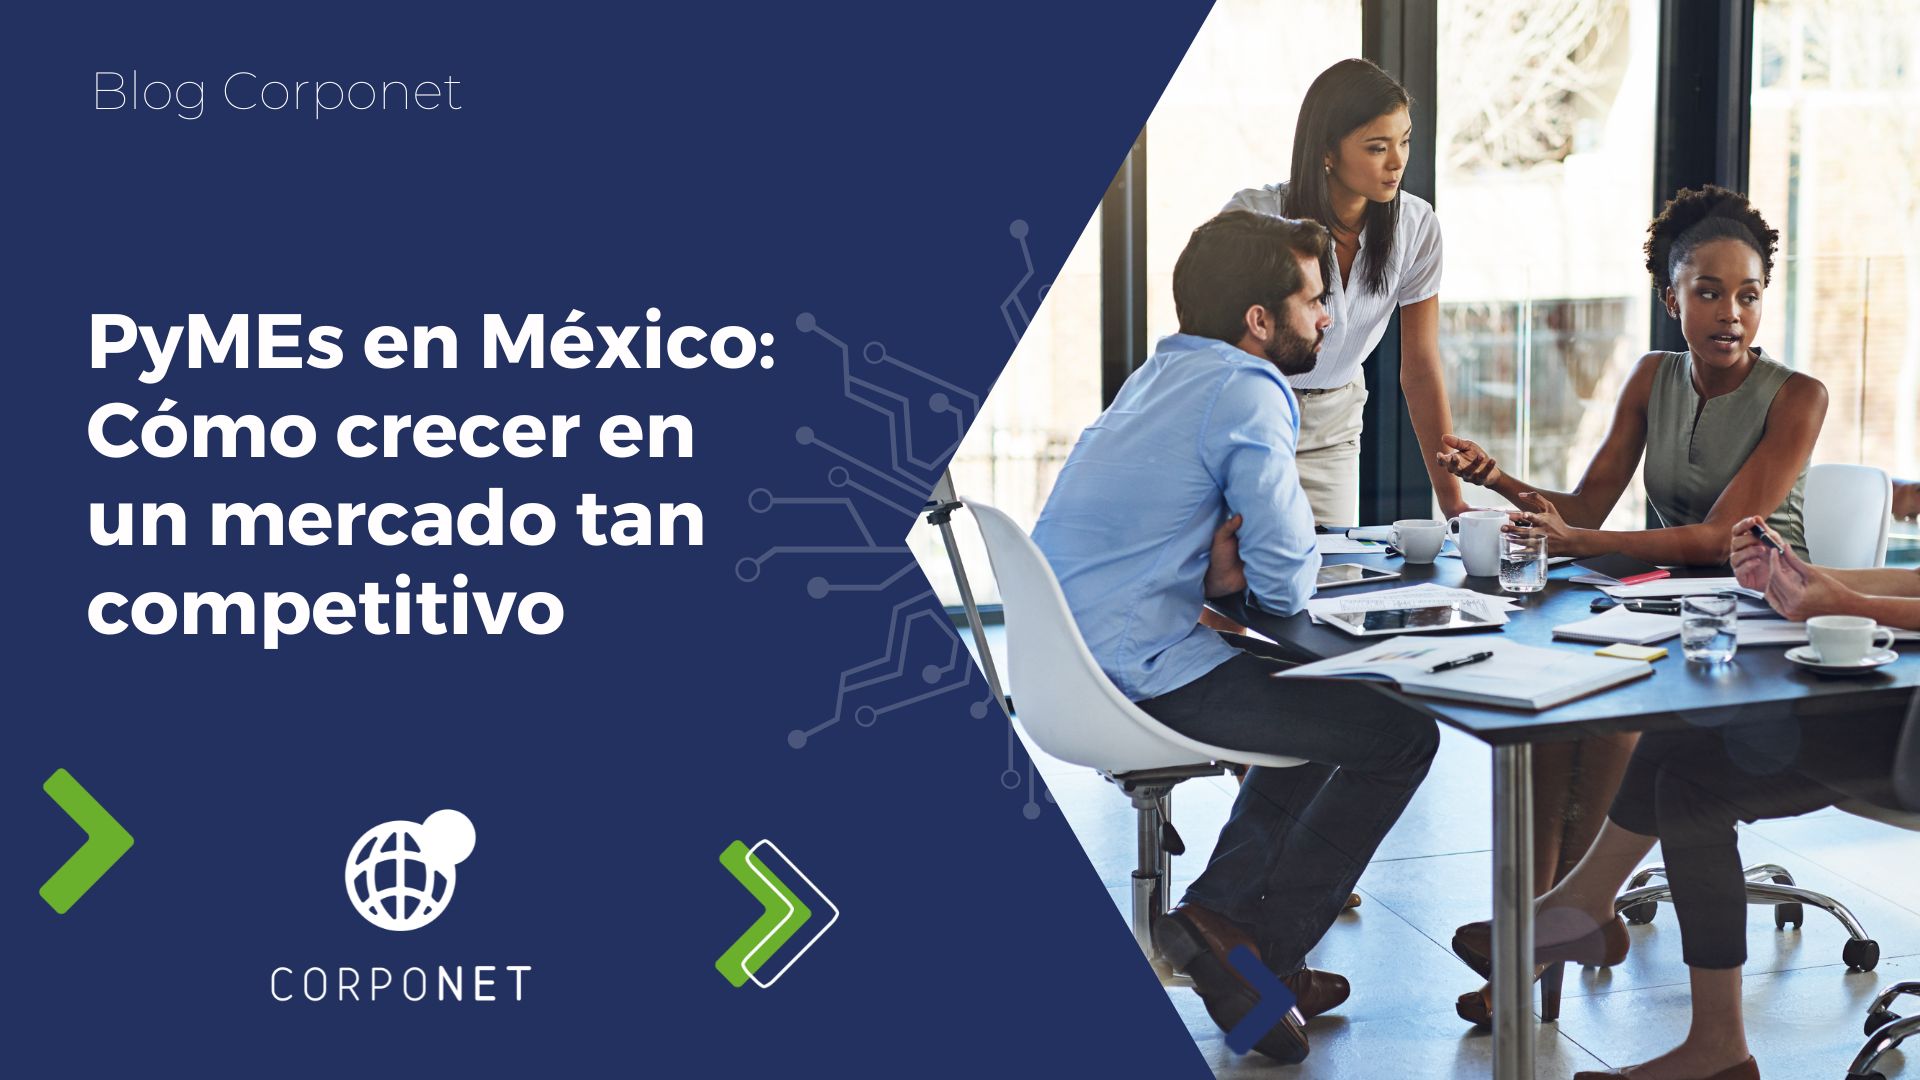 PyMEs en México: Cómo crecer en un mercado tan competitivo